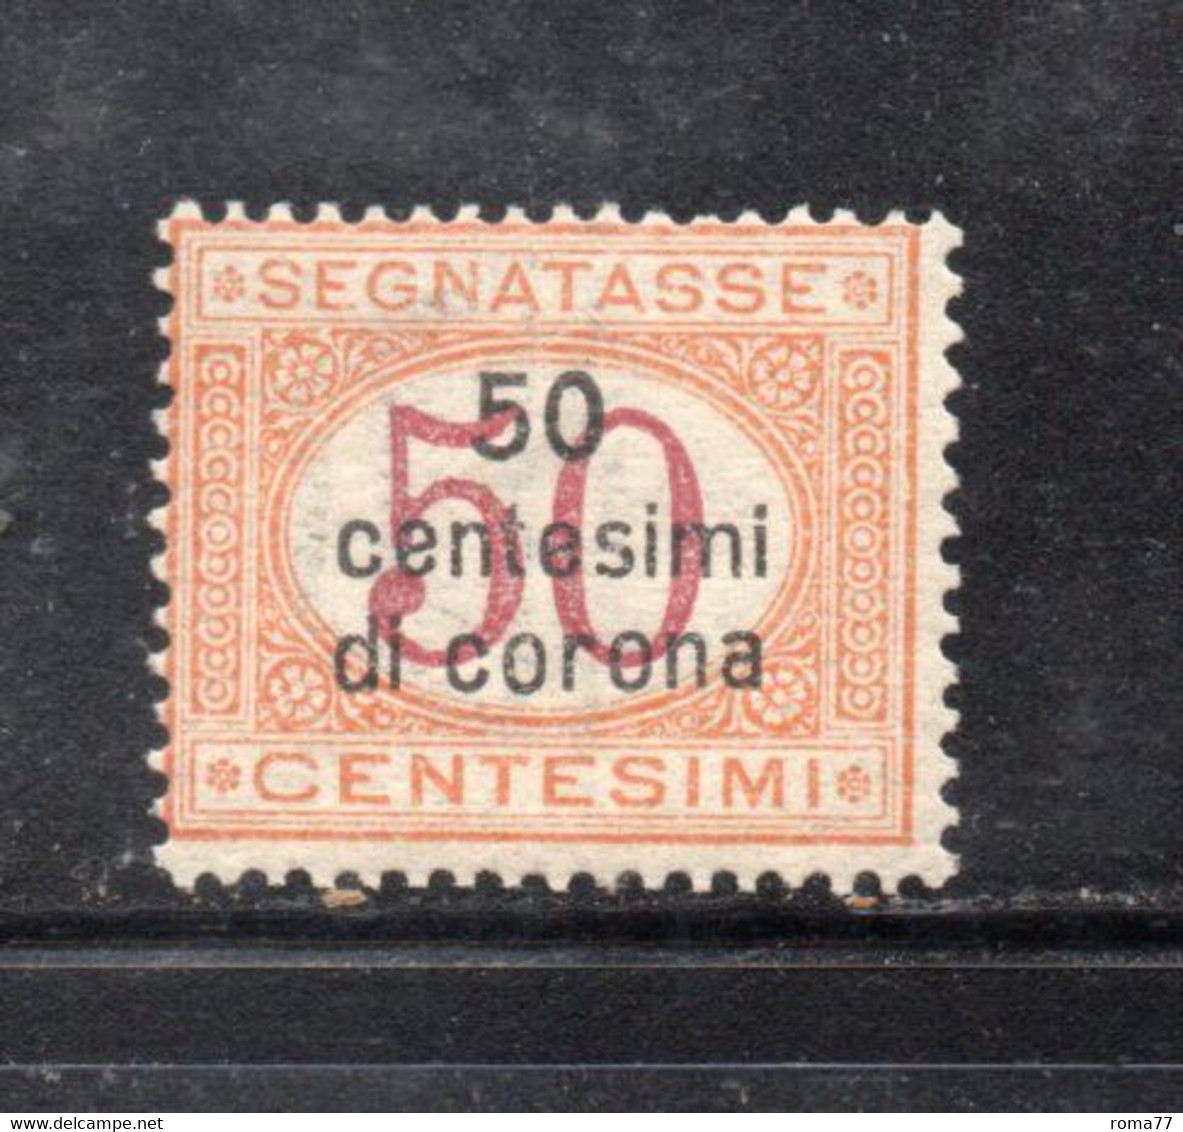 Y2274 - DALMAZIA 1922, Segnatasse Il N. 1  Con Gomma Integra  ***  MNH - Dalmatia